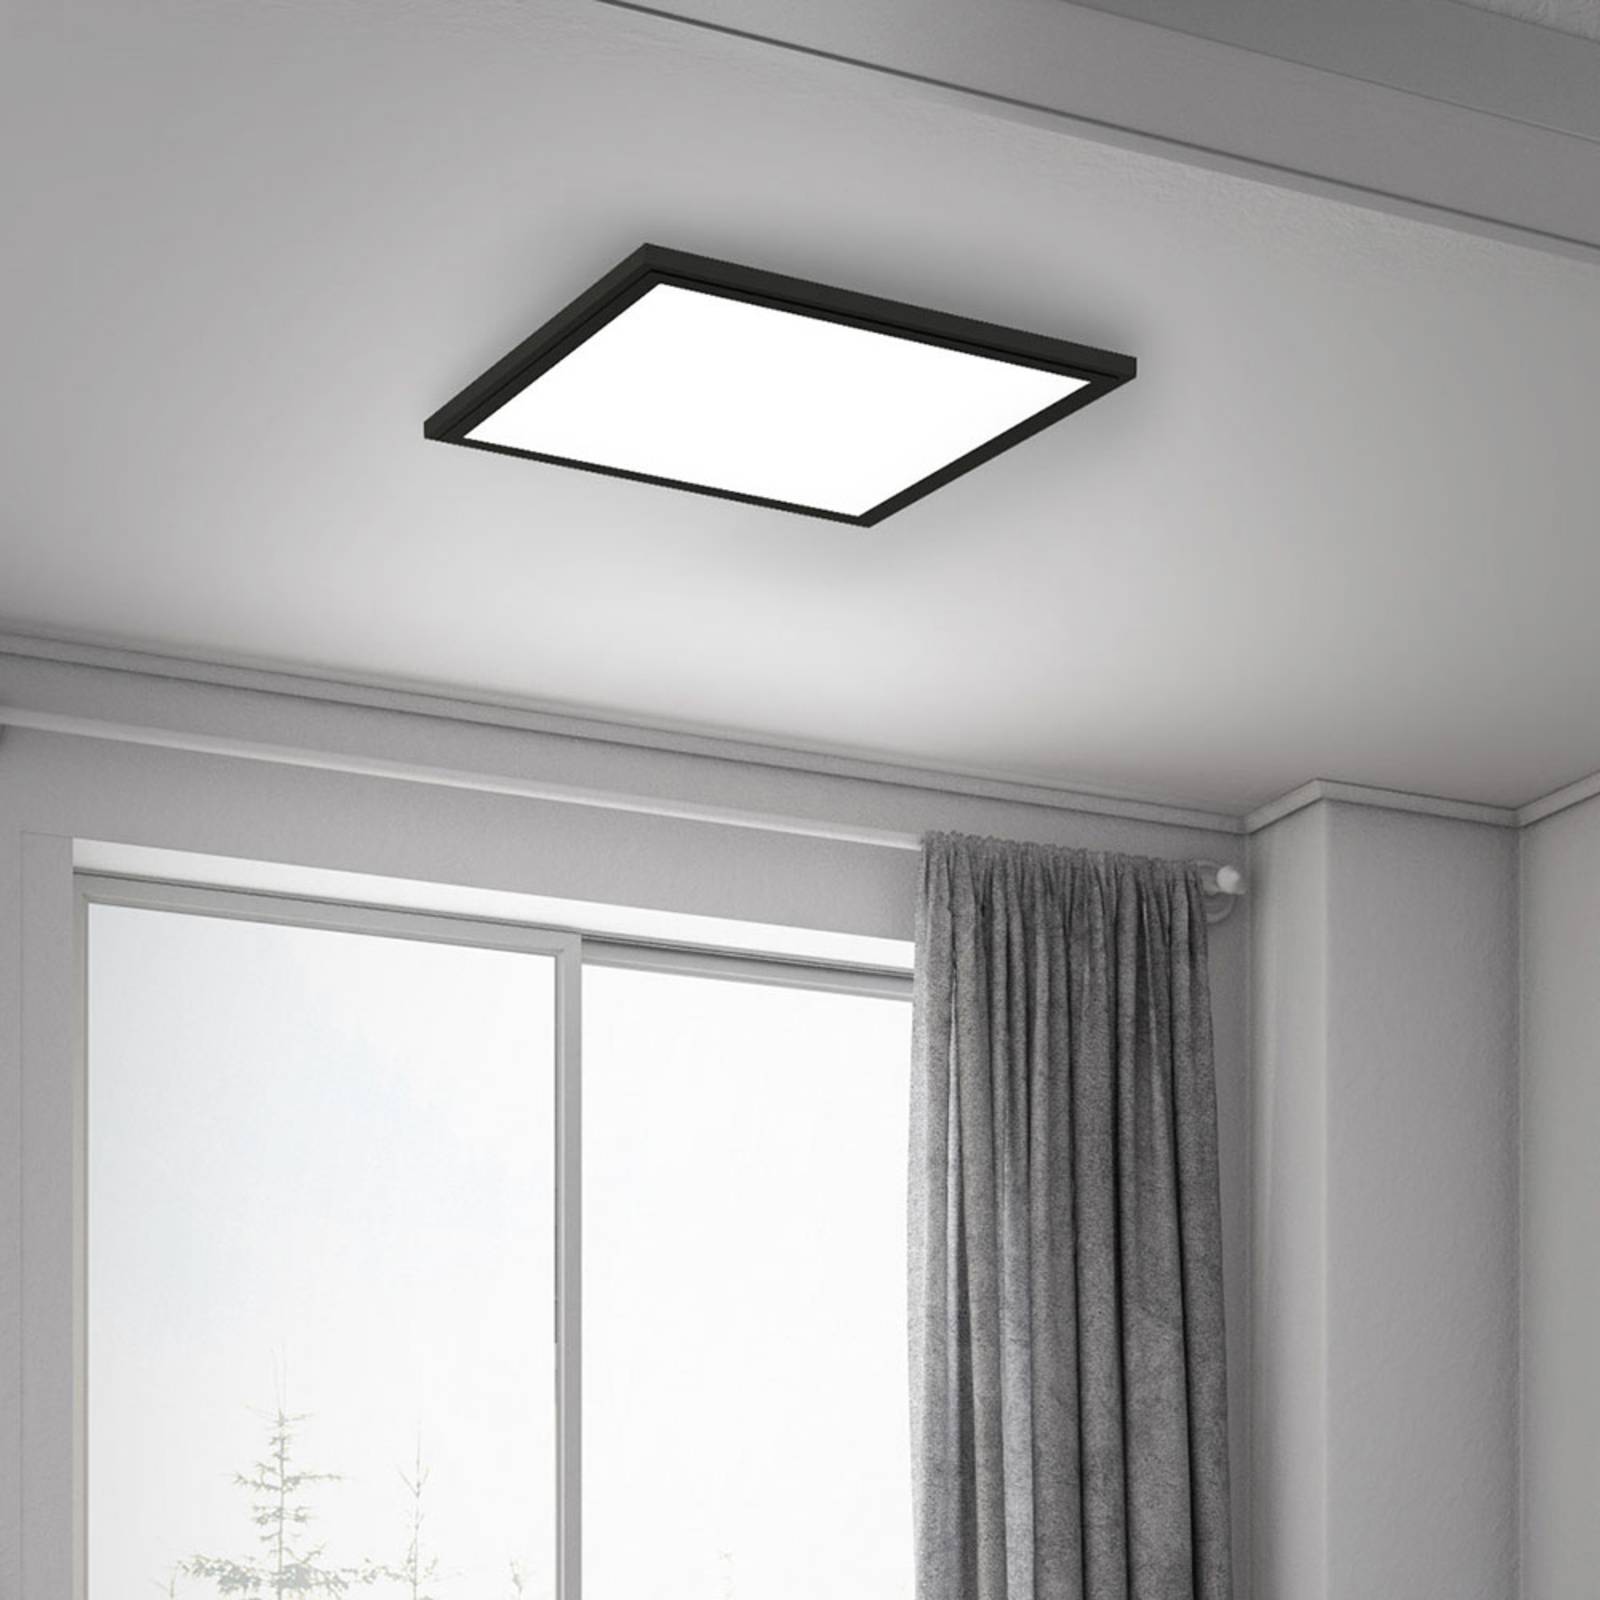 Image of Briloner Pannello LED Simple, nero, ultrapiatto, 30x30cm